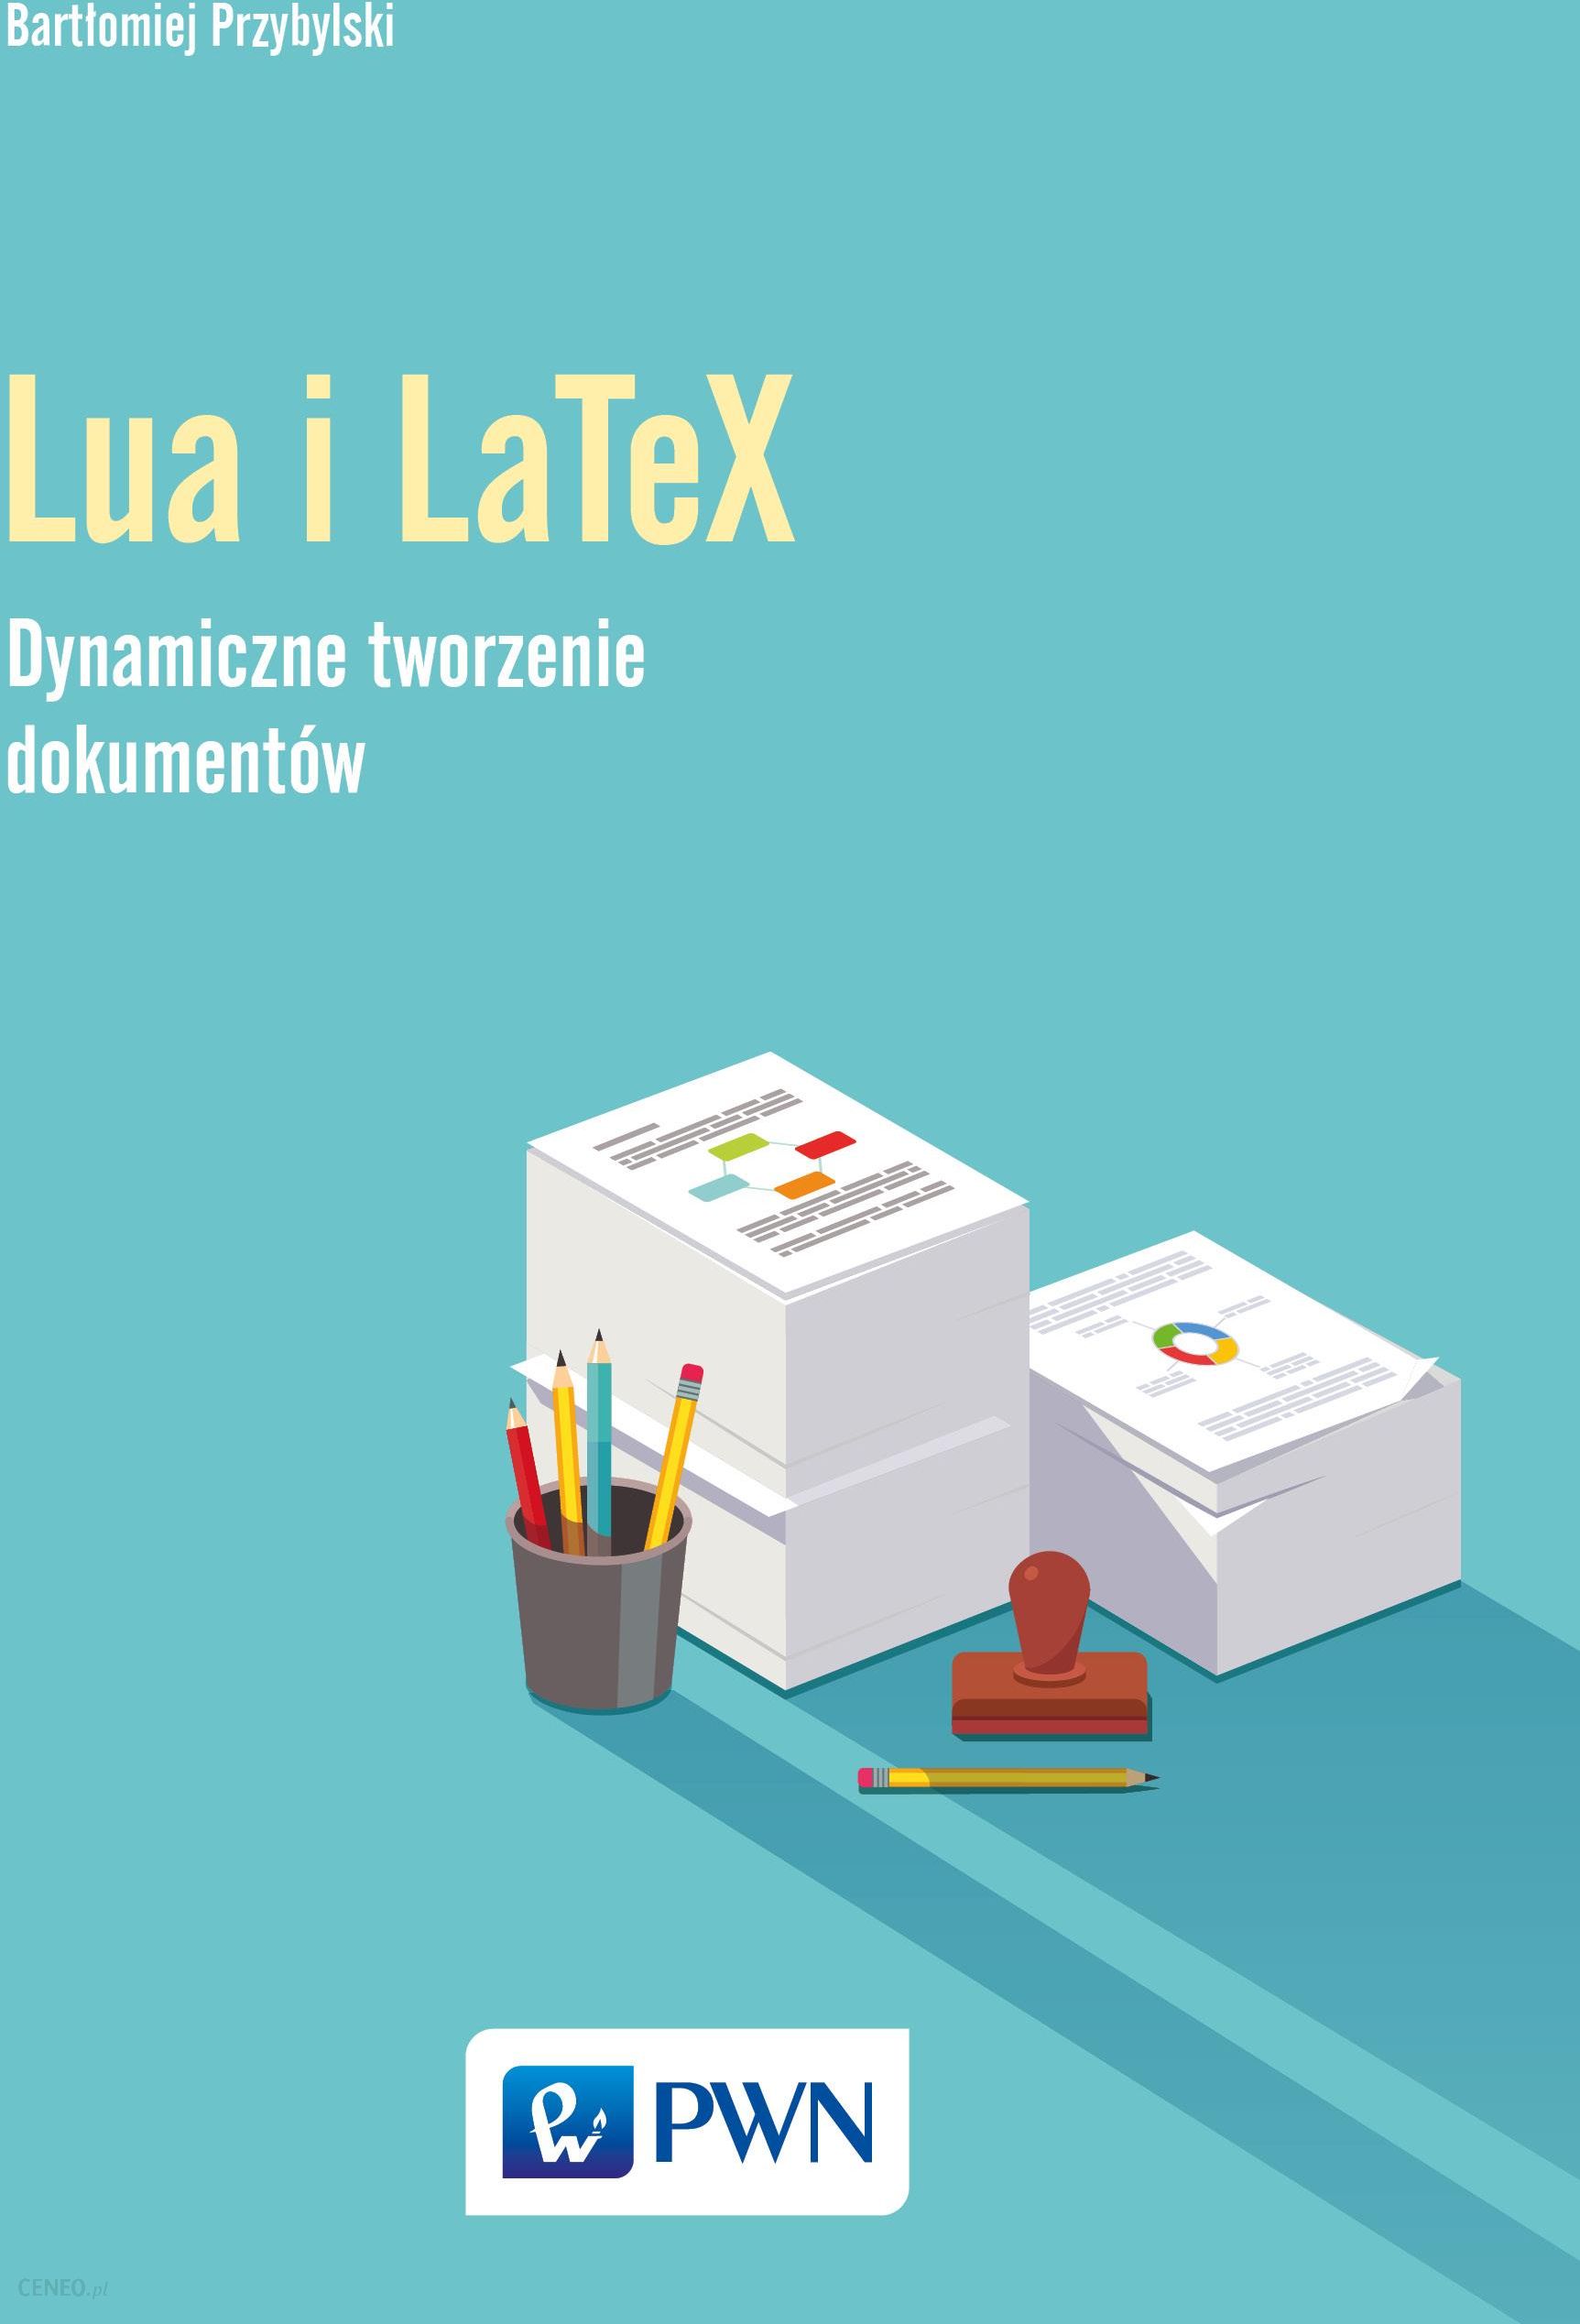 Podręcznik Do Informatyki Język Lua I Latex Tworzenie Dynamicznych Dokumentów Ceny I Opinie 5535